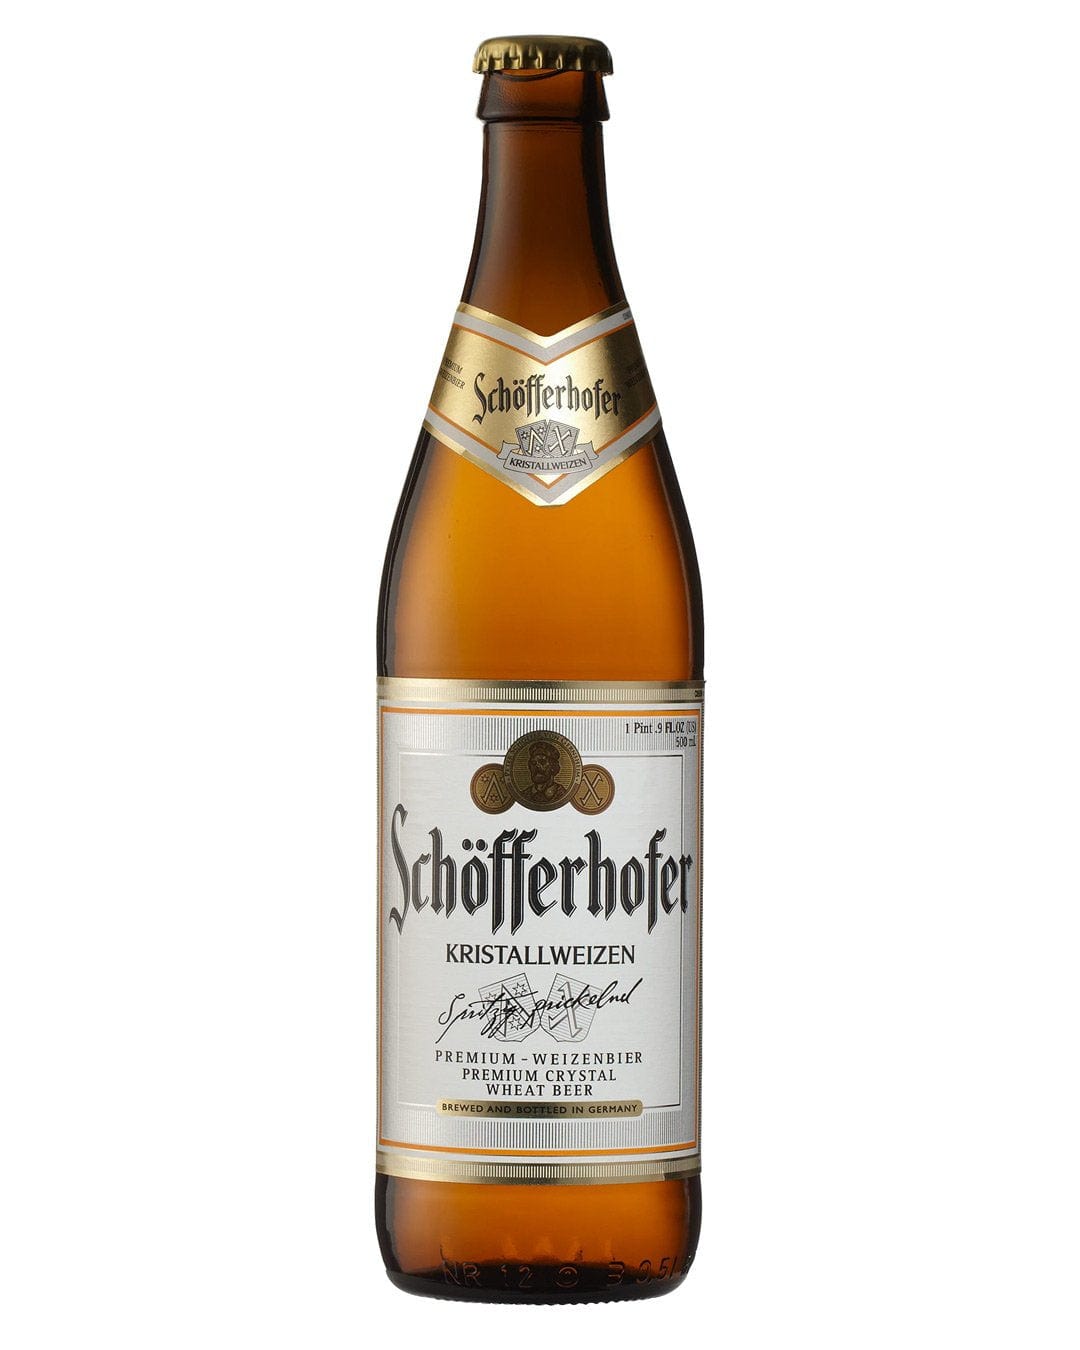 Schofferhofer Kristallweizen Beer Multipack, 20 x 500 ml Beer